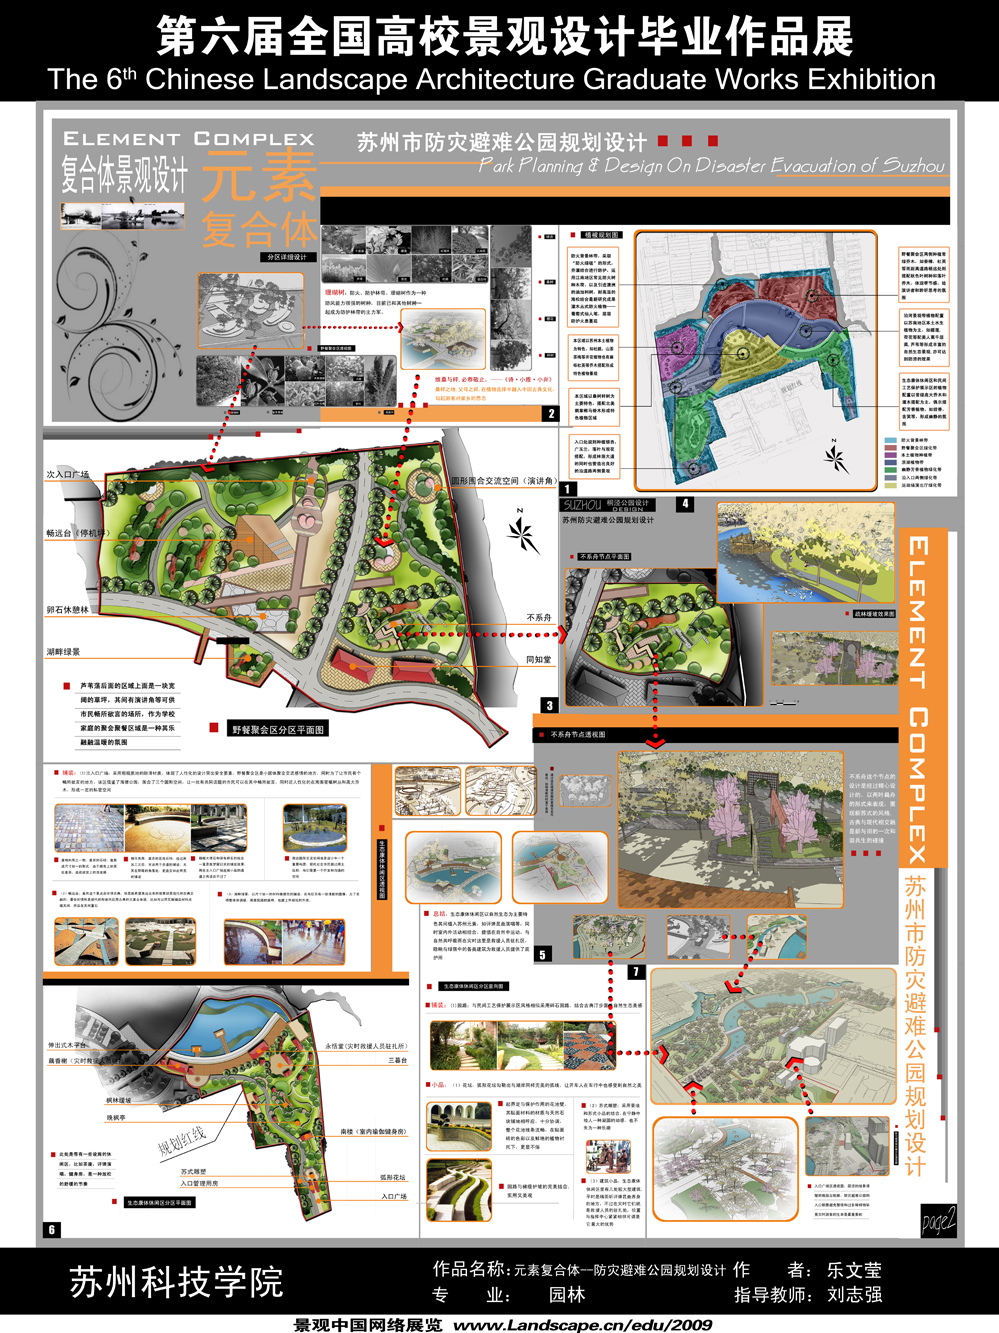 元素复合体——苏州市防灾避难公园规划设计-2